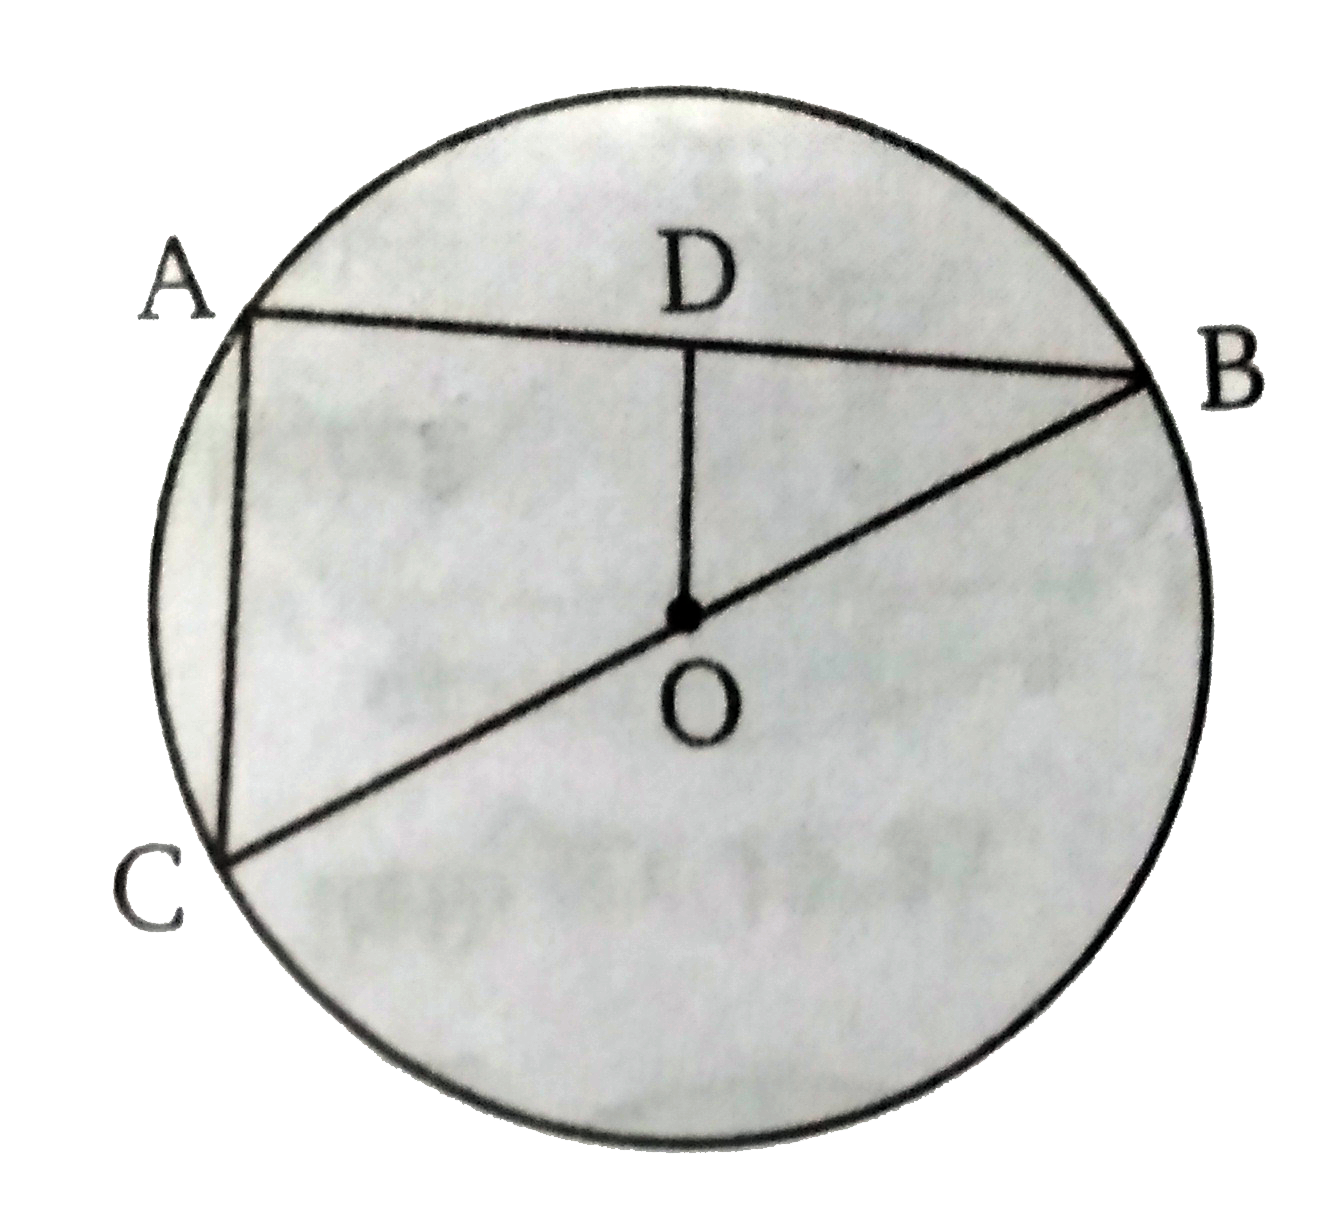 चित्र में O केंद्र के वृत्त की जीवा AB पर एक लम्ब OD है। यदि BC वृत्त का व्यास हो तो सिद्ध कीजिये की CA = 2 OD